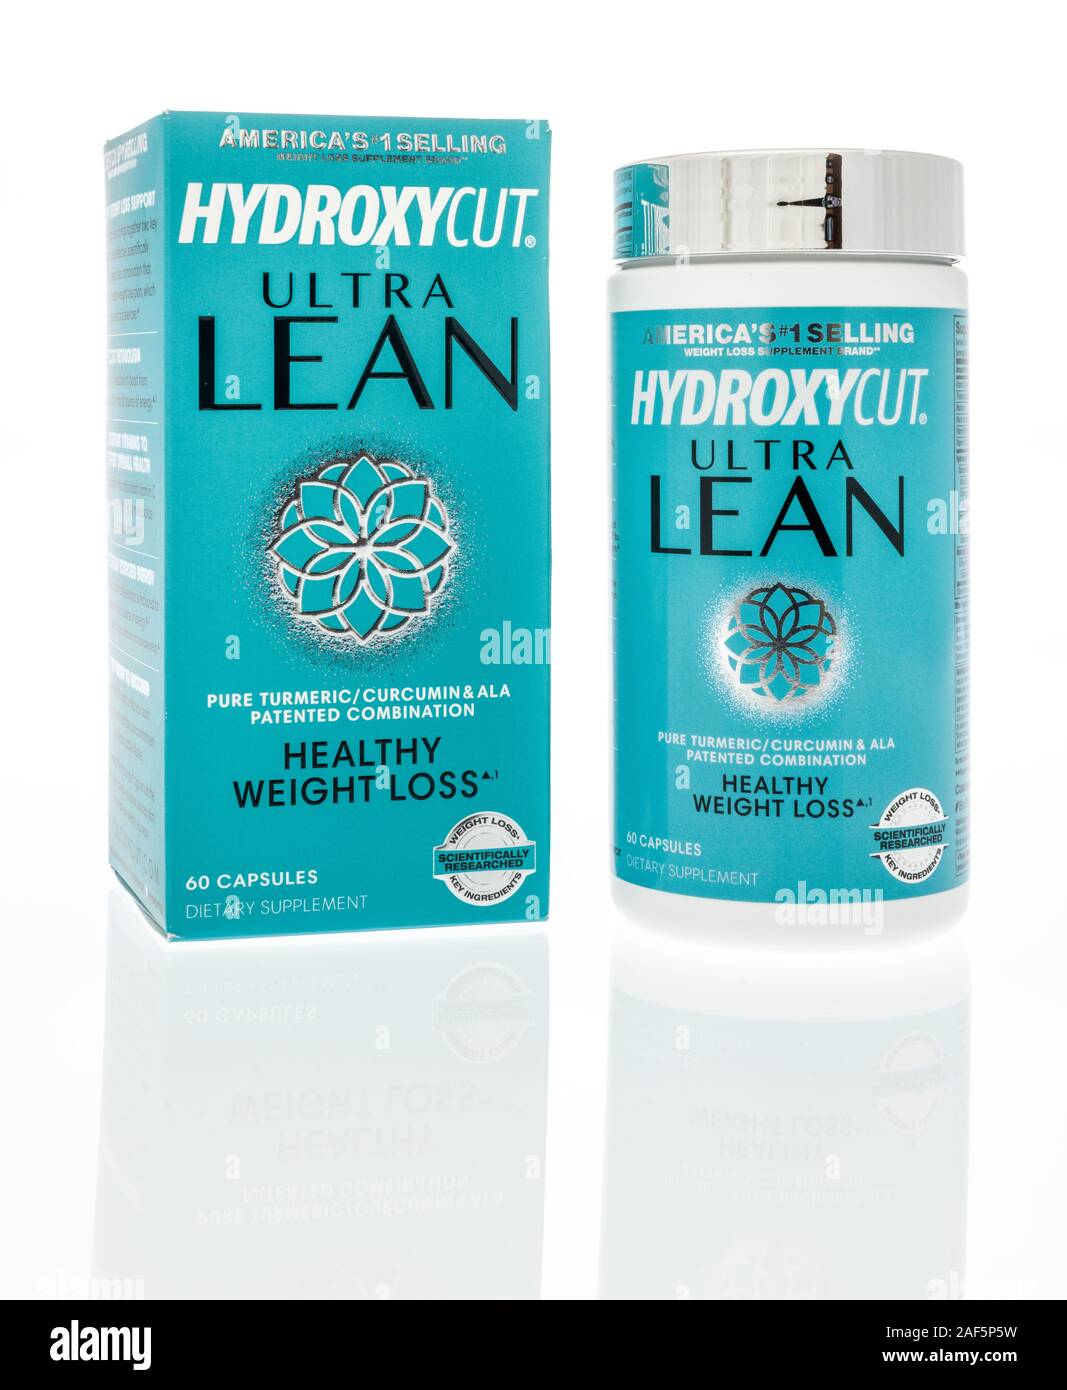 Winneconne, WI - 10 novembre 2019 : un paquet de Hydroxycut lean ultra supplément de perte de poids sur une base isolée Banque D'Images